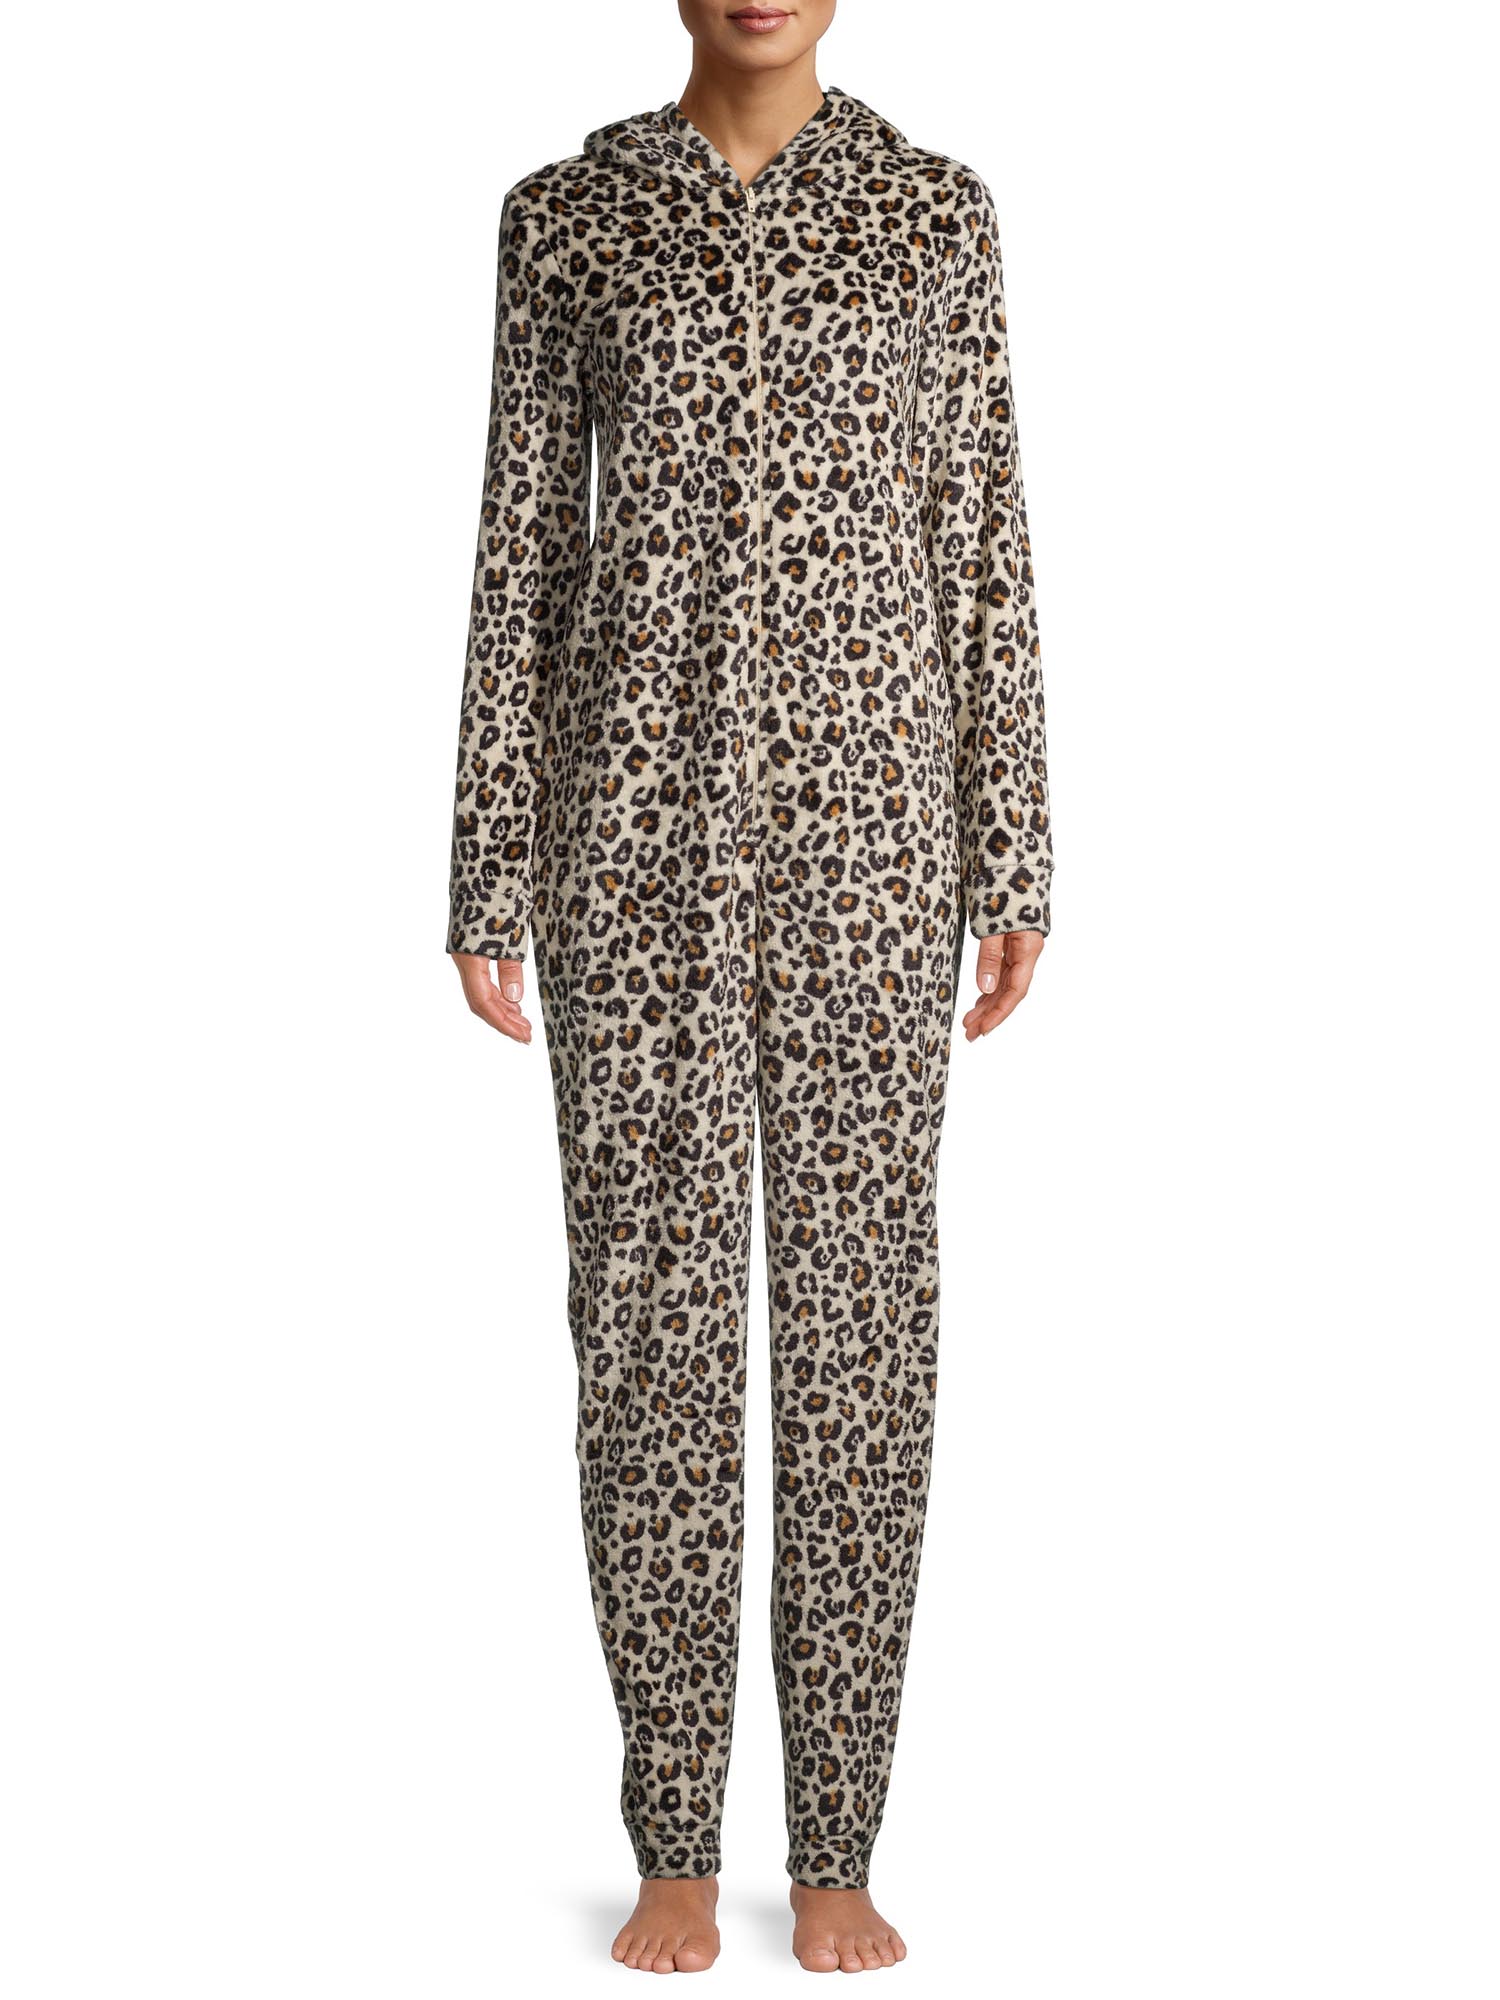 George Women's Leopard Print Union Suit - image 1 of 6